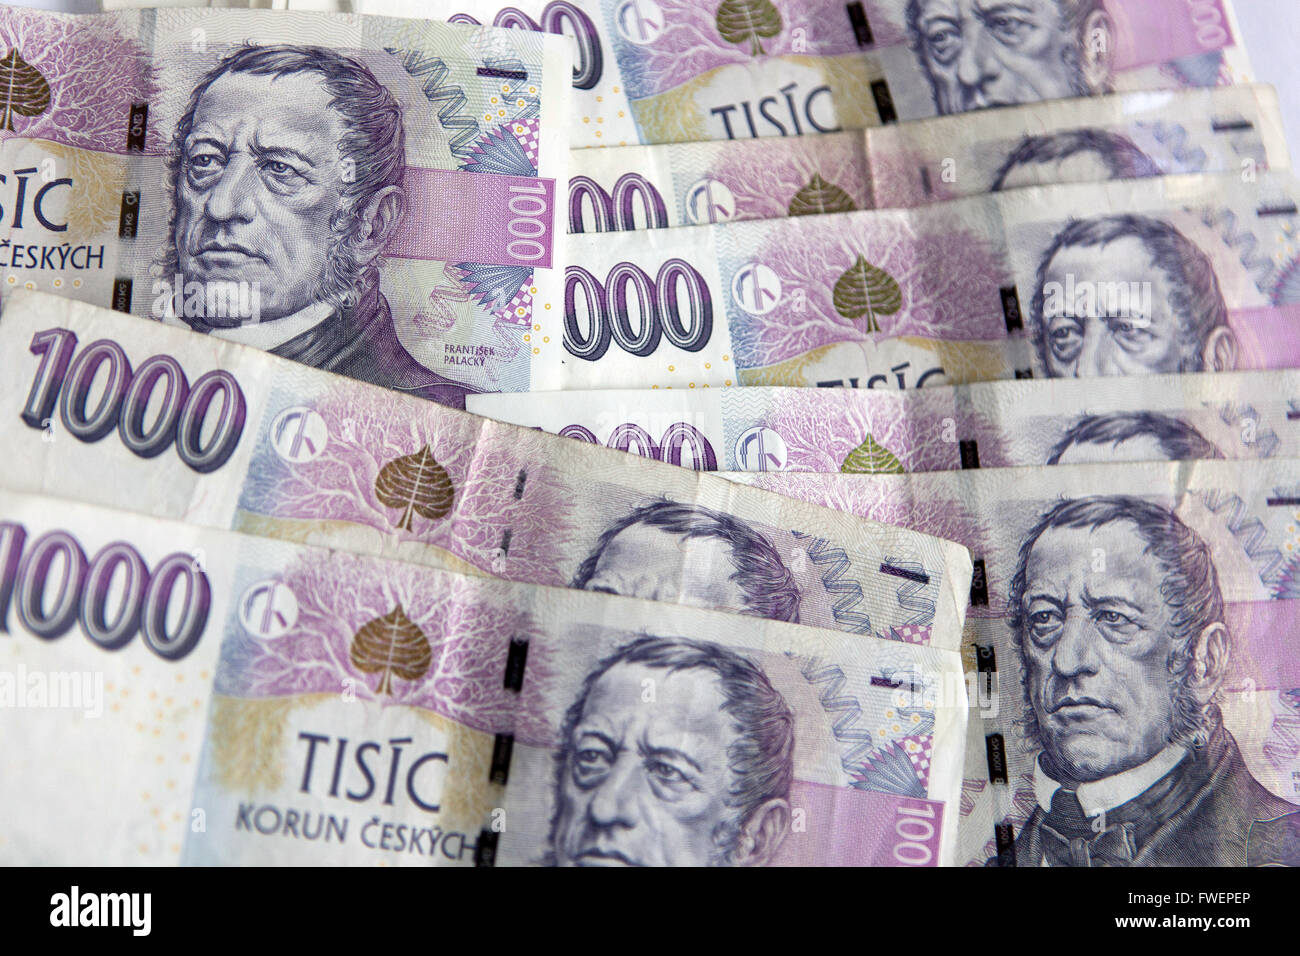 Czech money, Czech banknotes, Czech paper money koruna Stock Photo